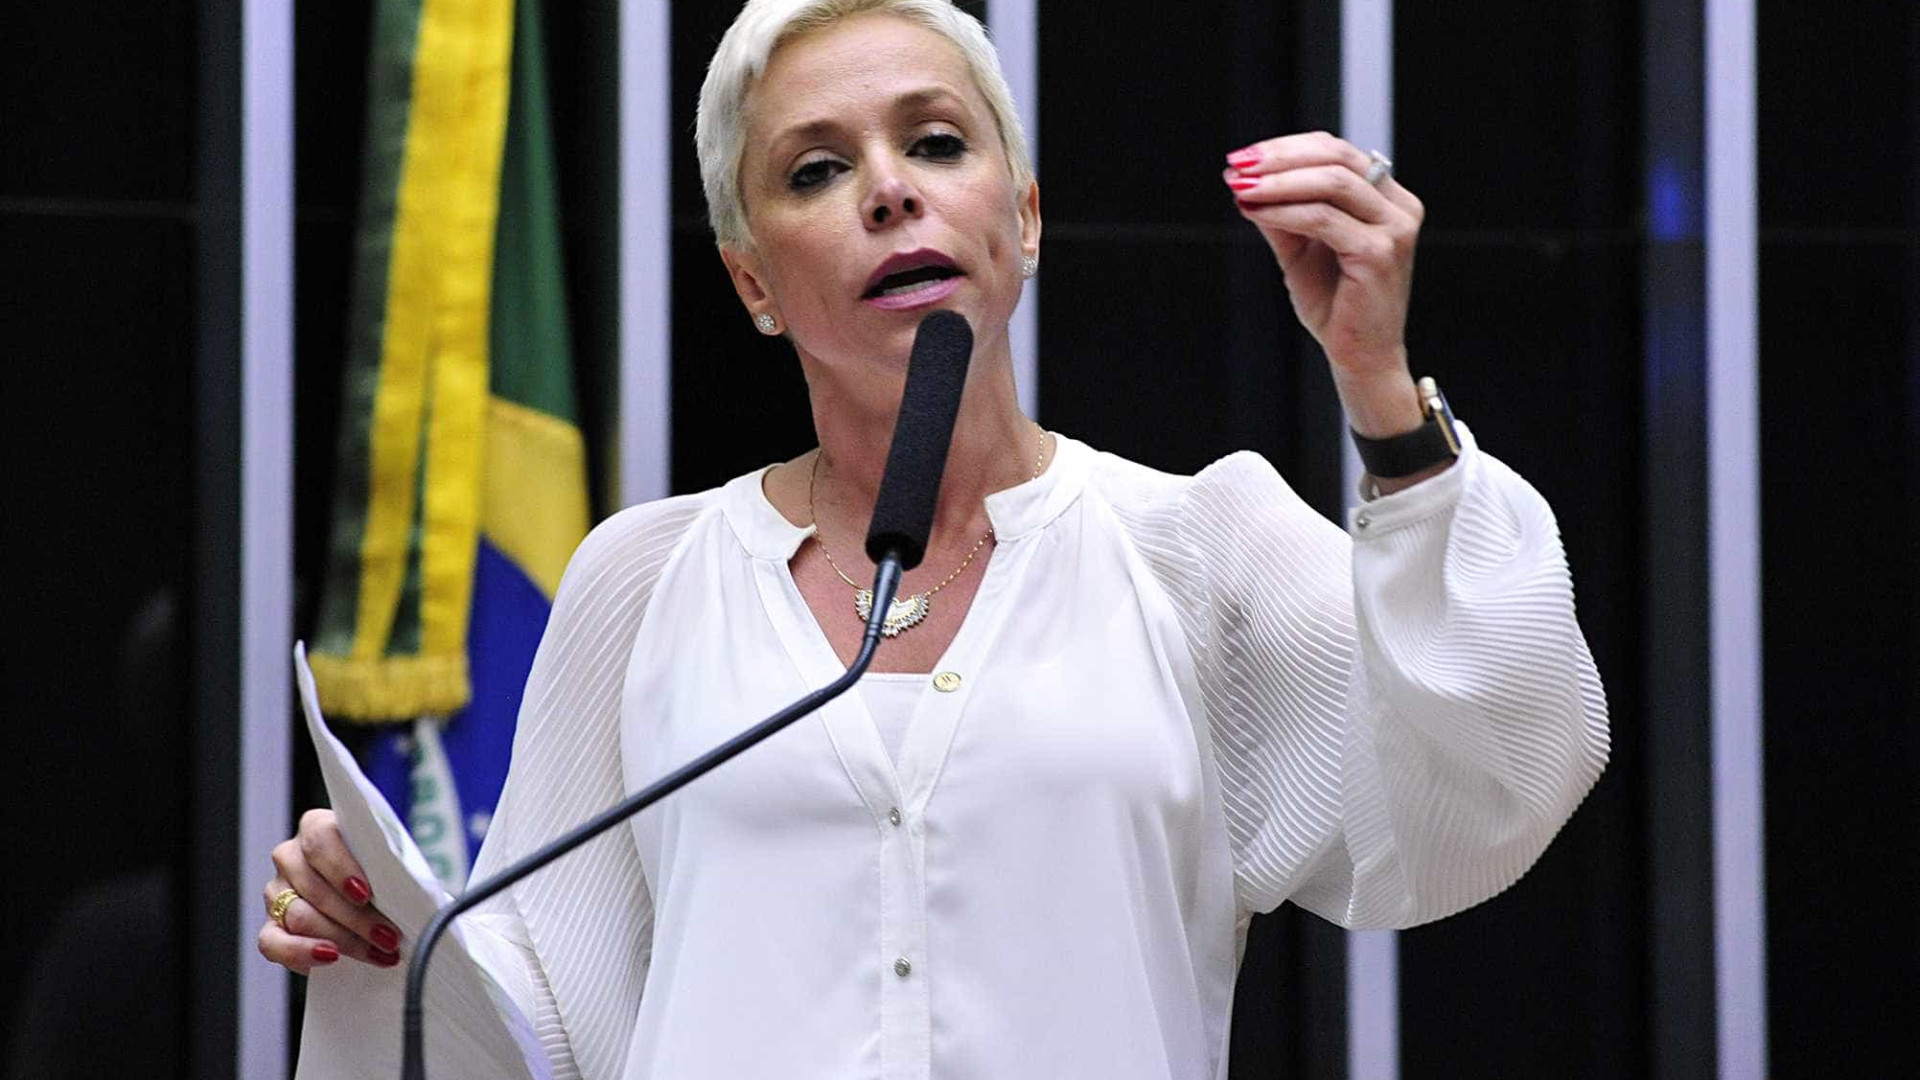 Advogados entram com ações para impedir posse de Cristiane Brasil